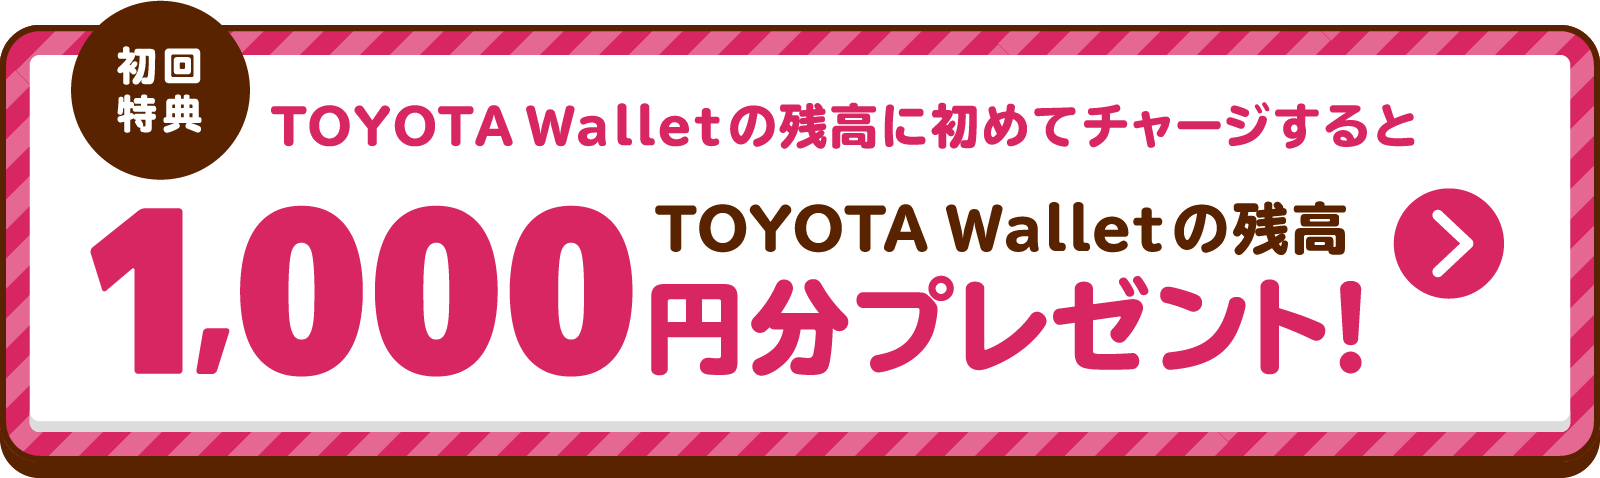 初回特典 TOYOTA Walletの残高に初めてチャージするとTOYOTA Walletの残高1,000円プレゼント！